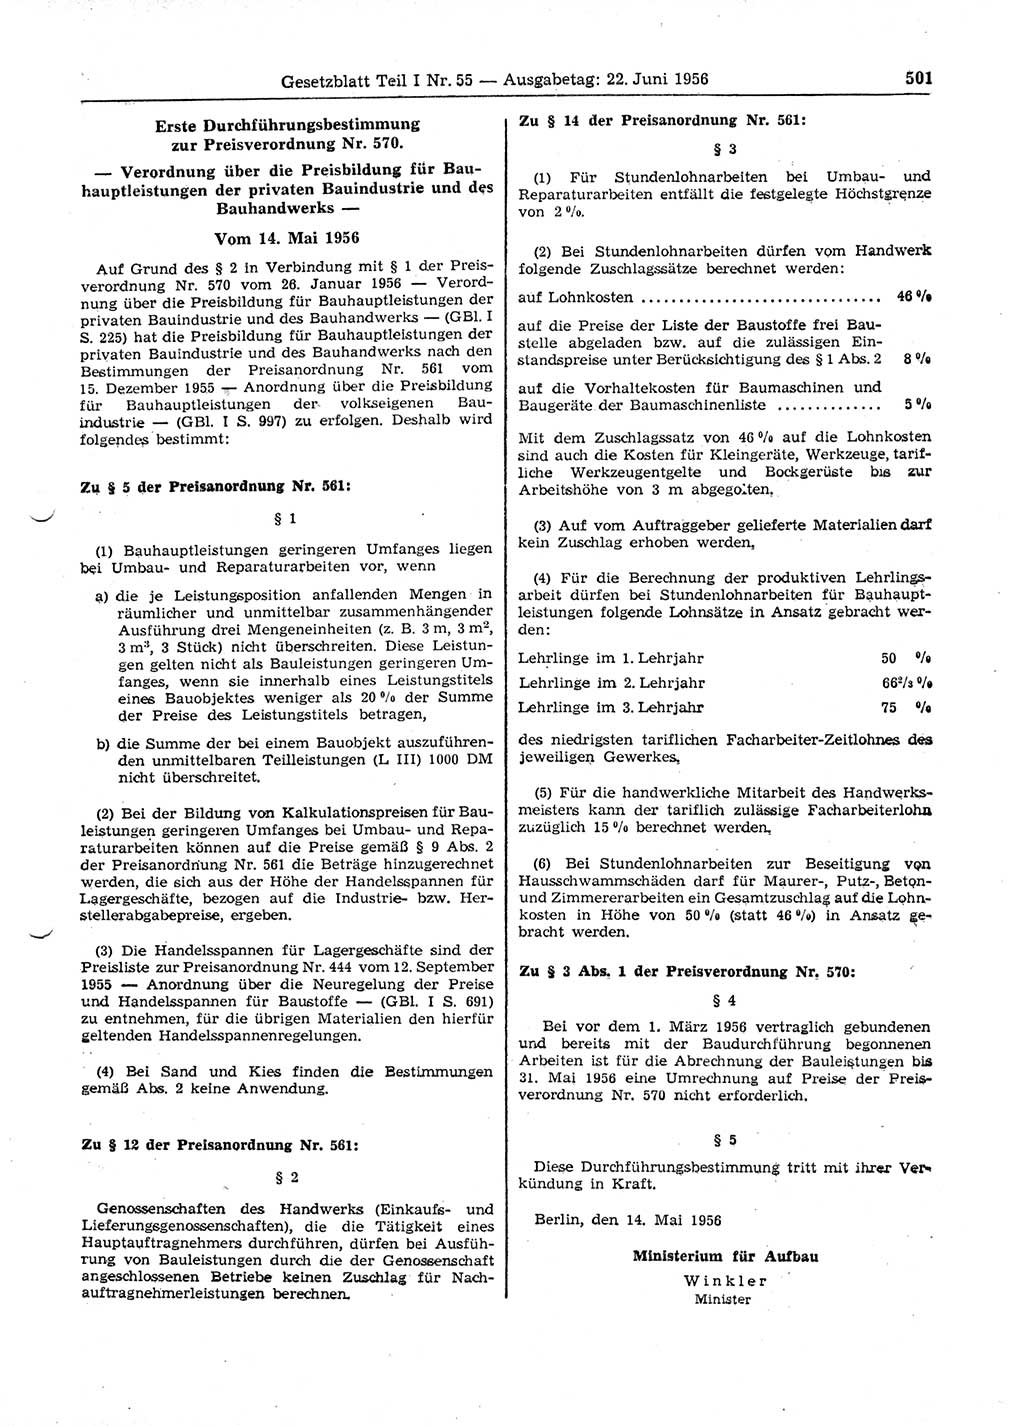 Gesetzblatt (GBl.) der Deutschen Demokratischen Republik (DDR) Teil Ⅰ 1956, Seite 501 (GBl. DDR Ⅰ 1956, S. 501)